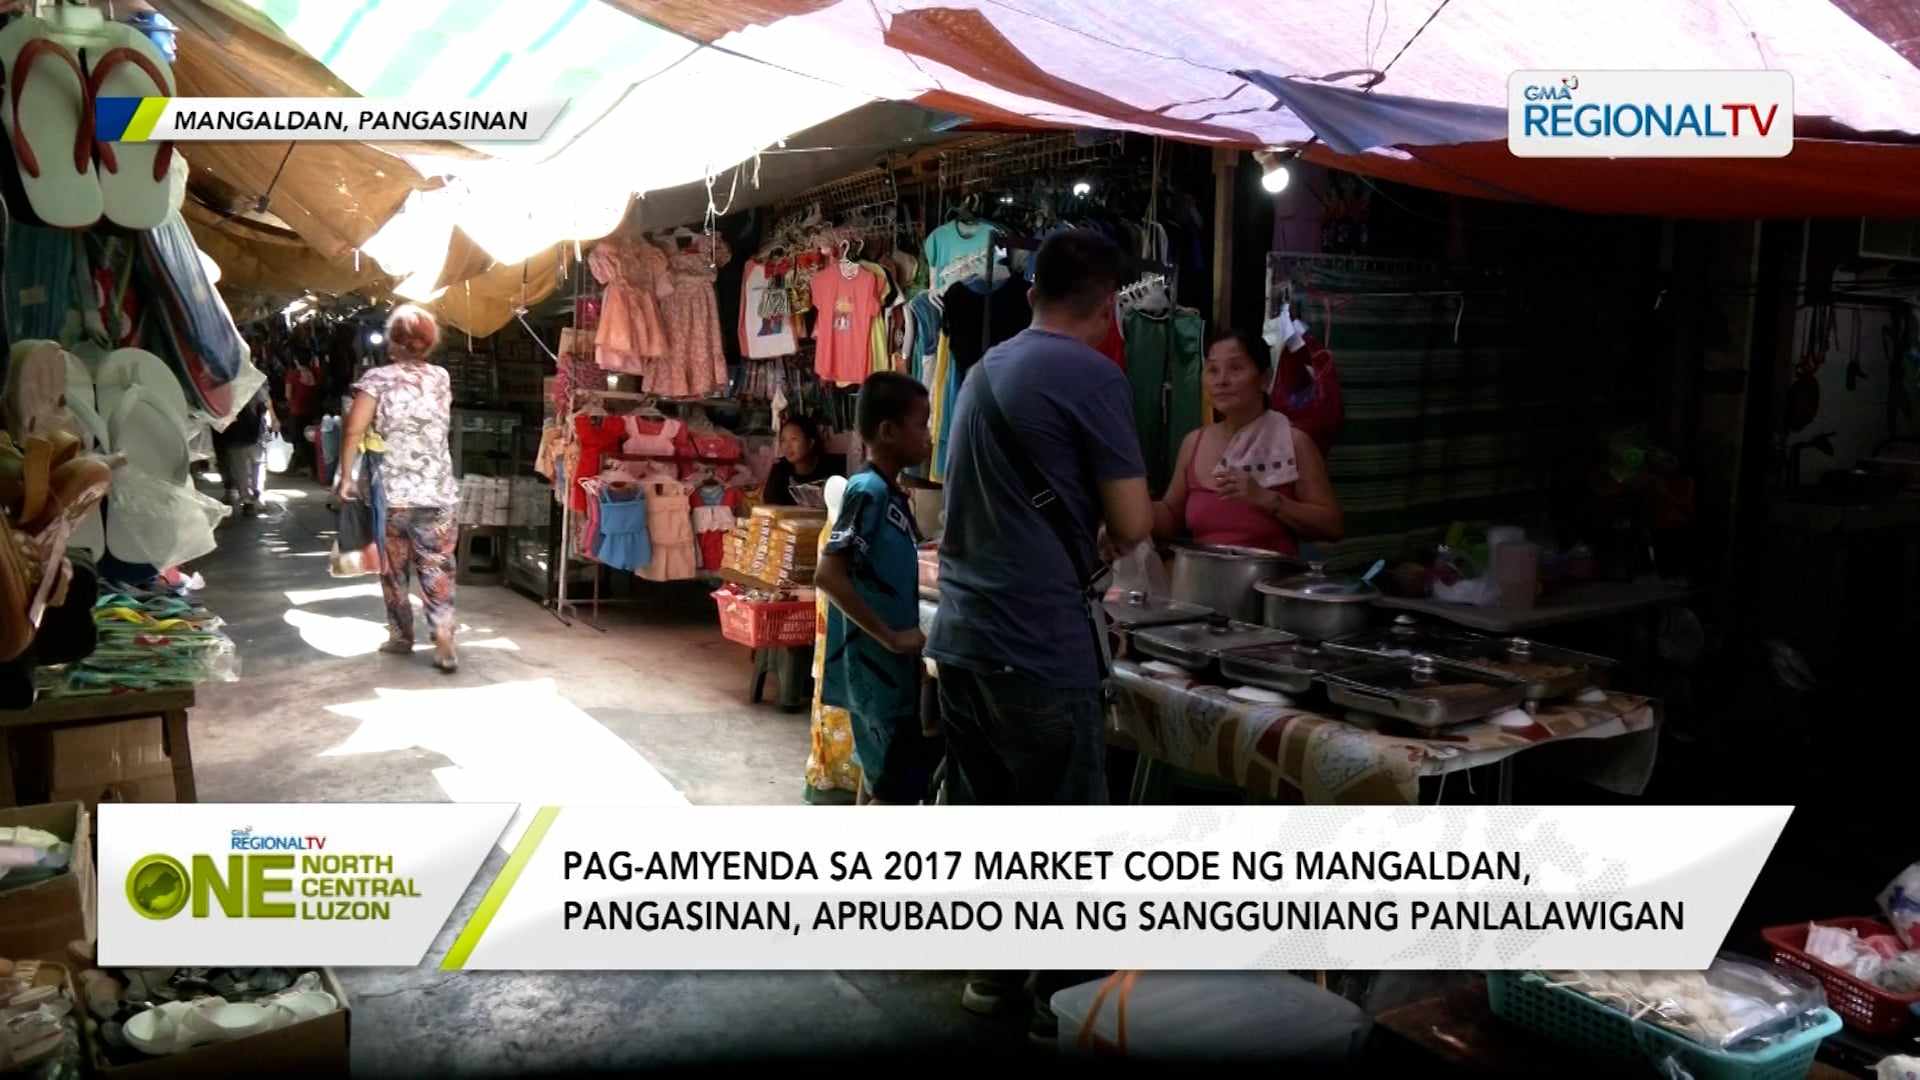 Pag-amyenda sa 2017 Market Code ng Mangaldan, Pangasinan, aprubado na